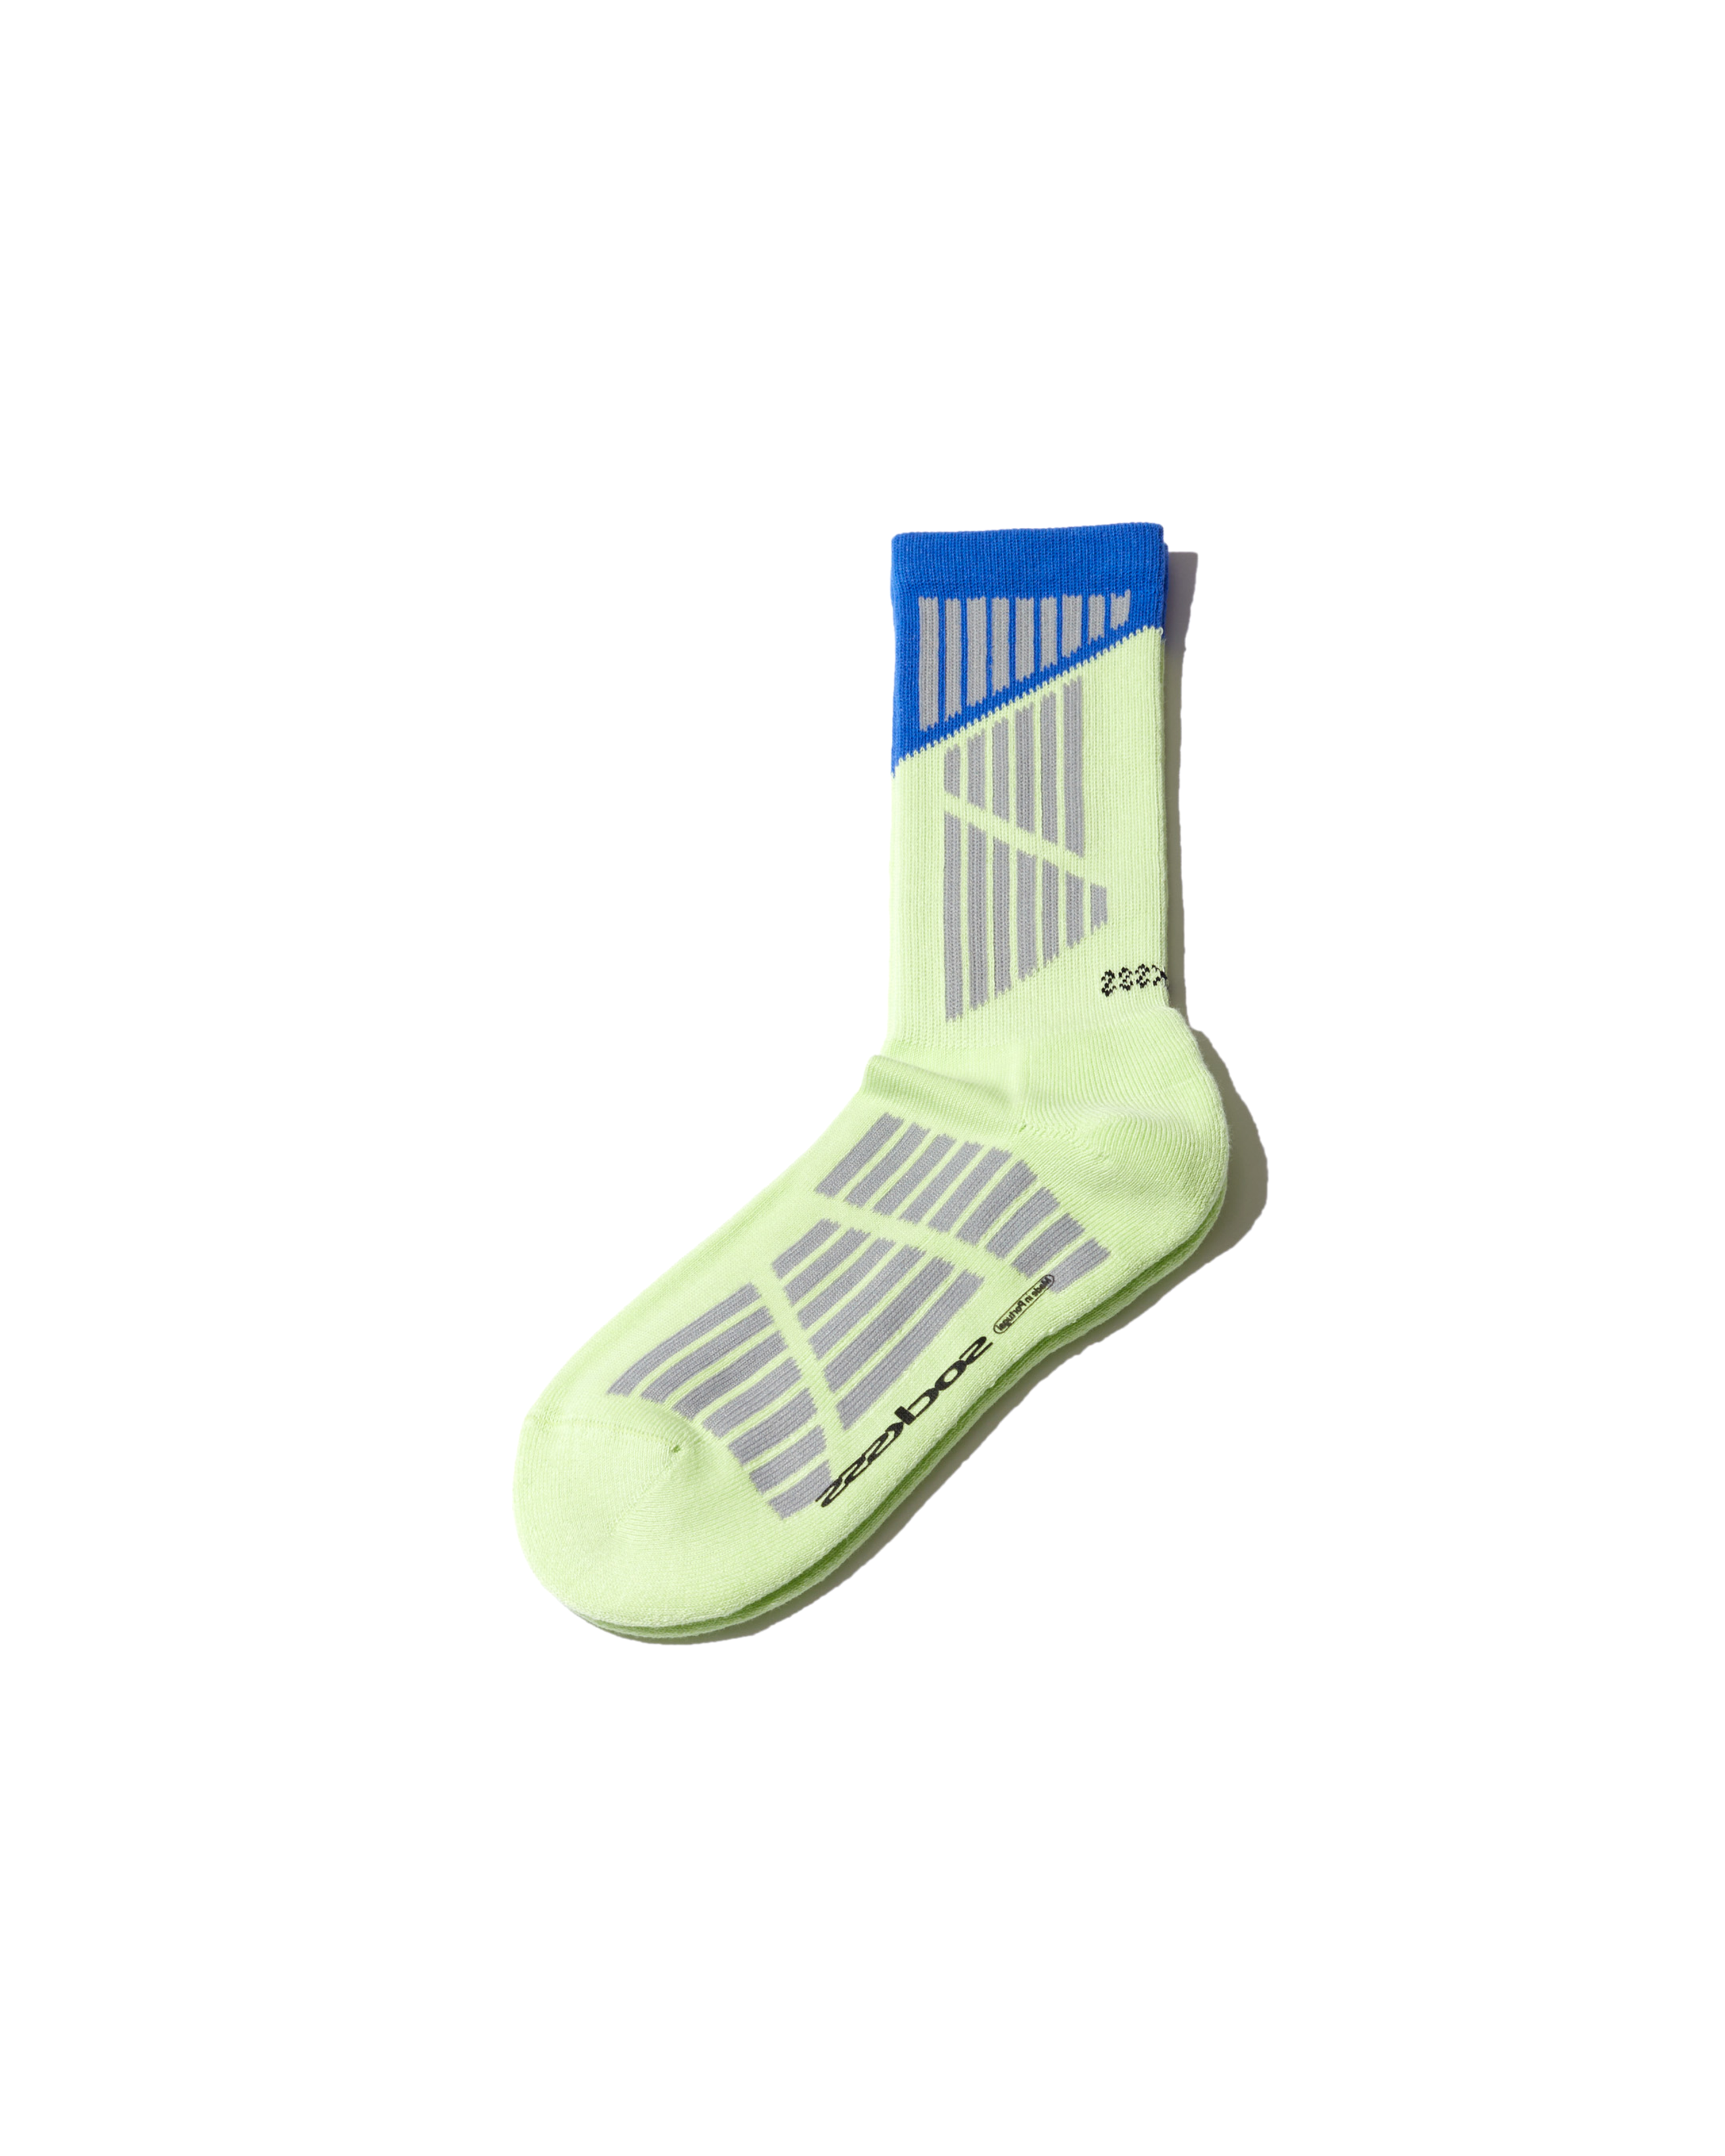 Starfleet Sock - Neon Green / Blue